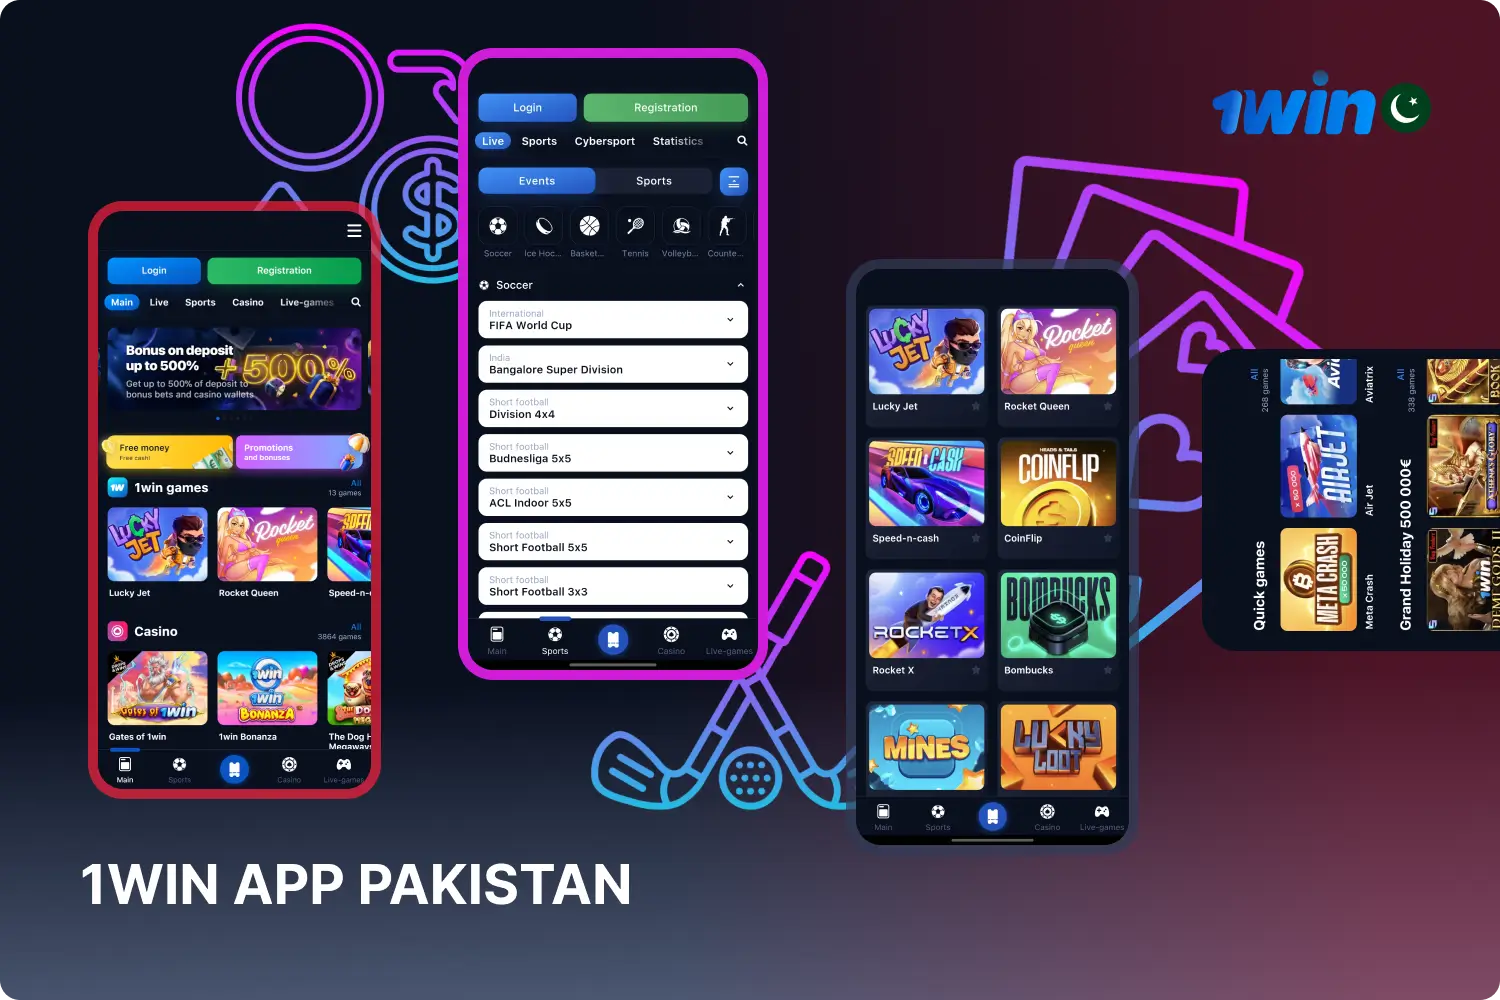 اینڈرائیڈ اور آئی او ایس کے لیے 1win bet موبائل ایپ پاکستان میں صارفین کو کھیلوں پر شرط لگانے اور سہولت کے ساتھ کیسینو گیمز کھیلنے کی اجازت دیتی ہے